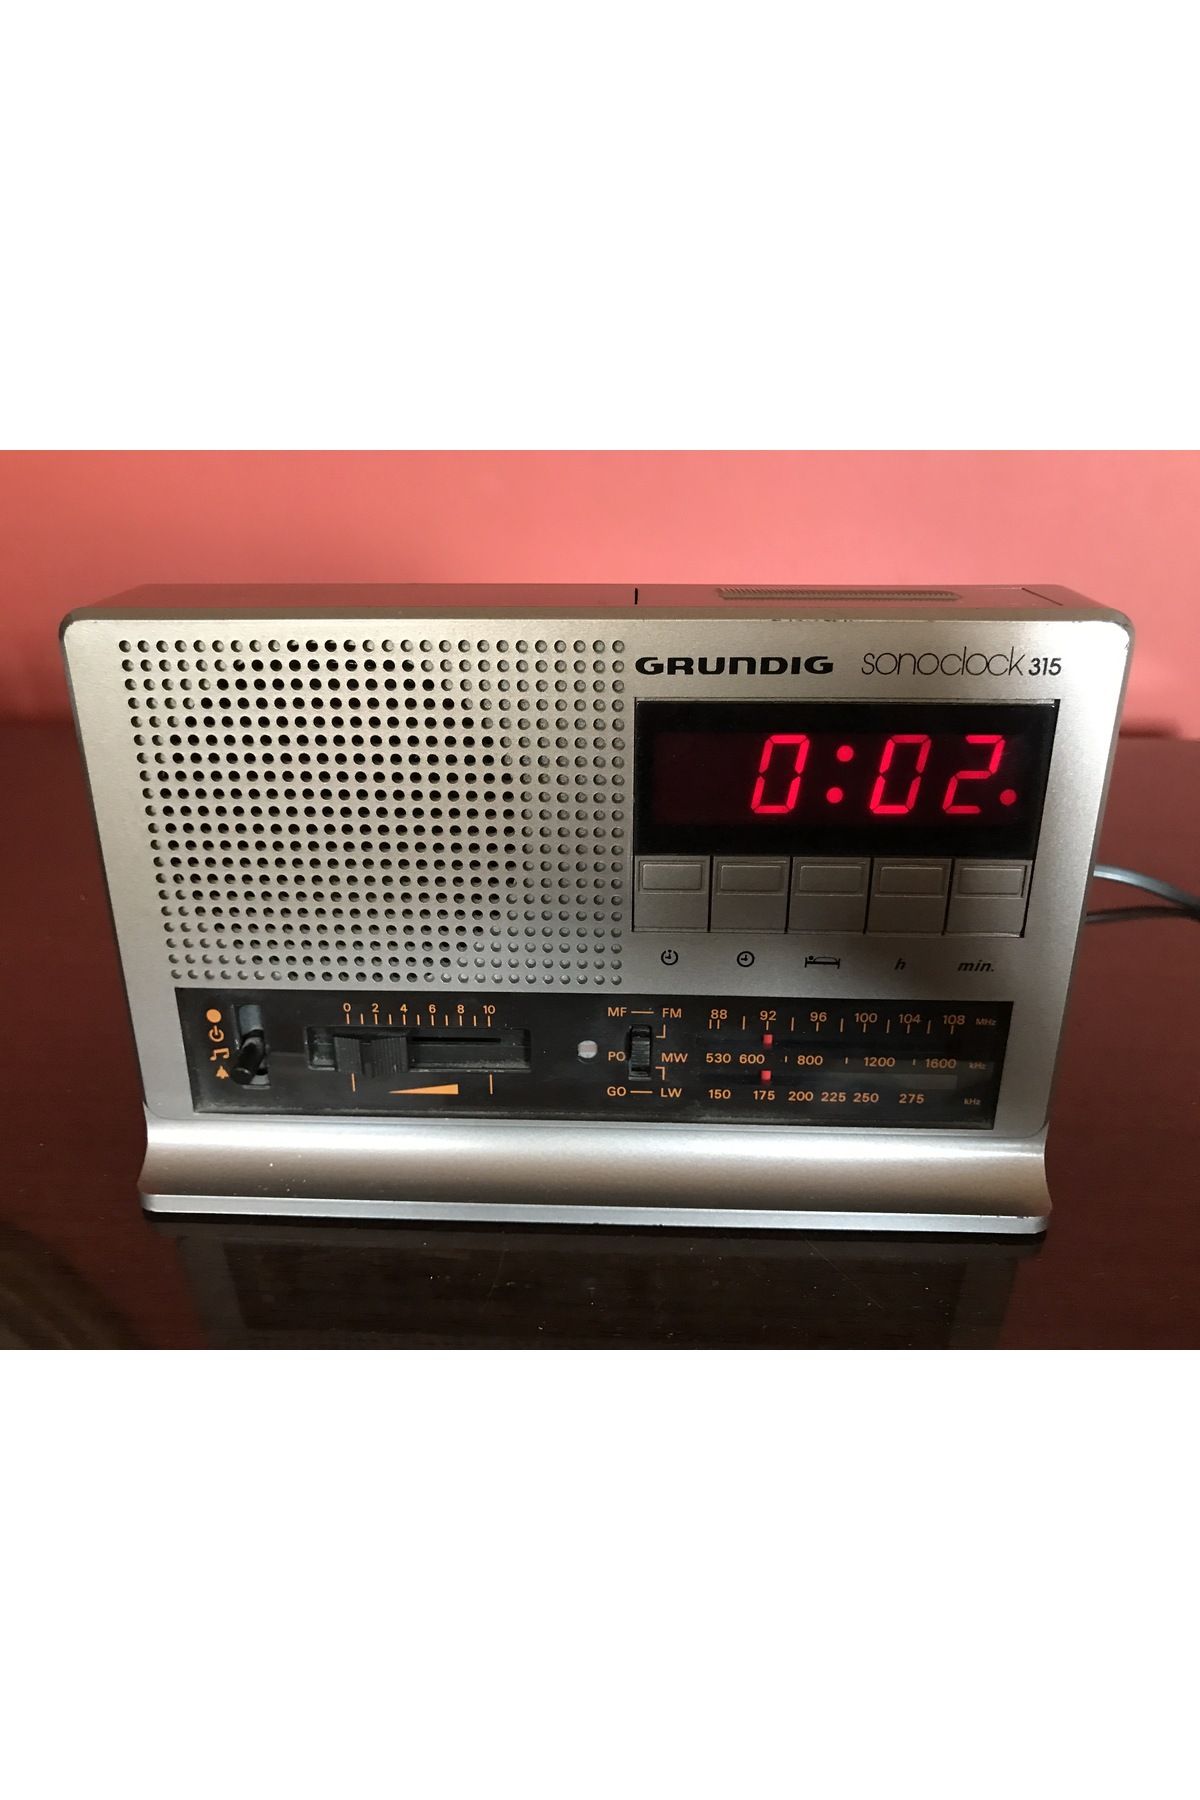 Grundig 1980 ler Grundig sonoclock 315 alarmlı radyo 20 x 12,5 x 8,5 cm Ölçülerinde - çalışır durumda